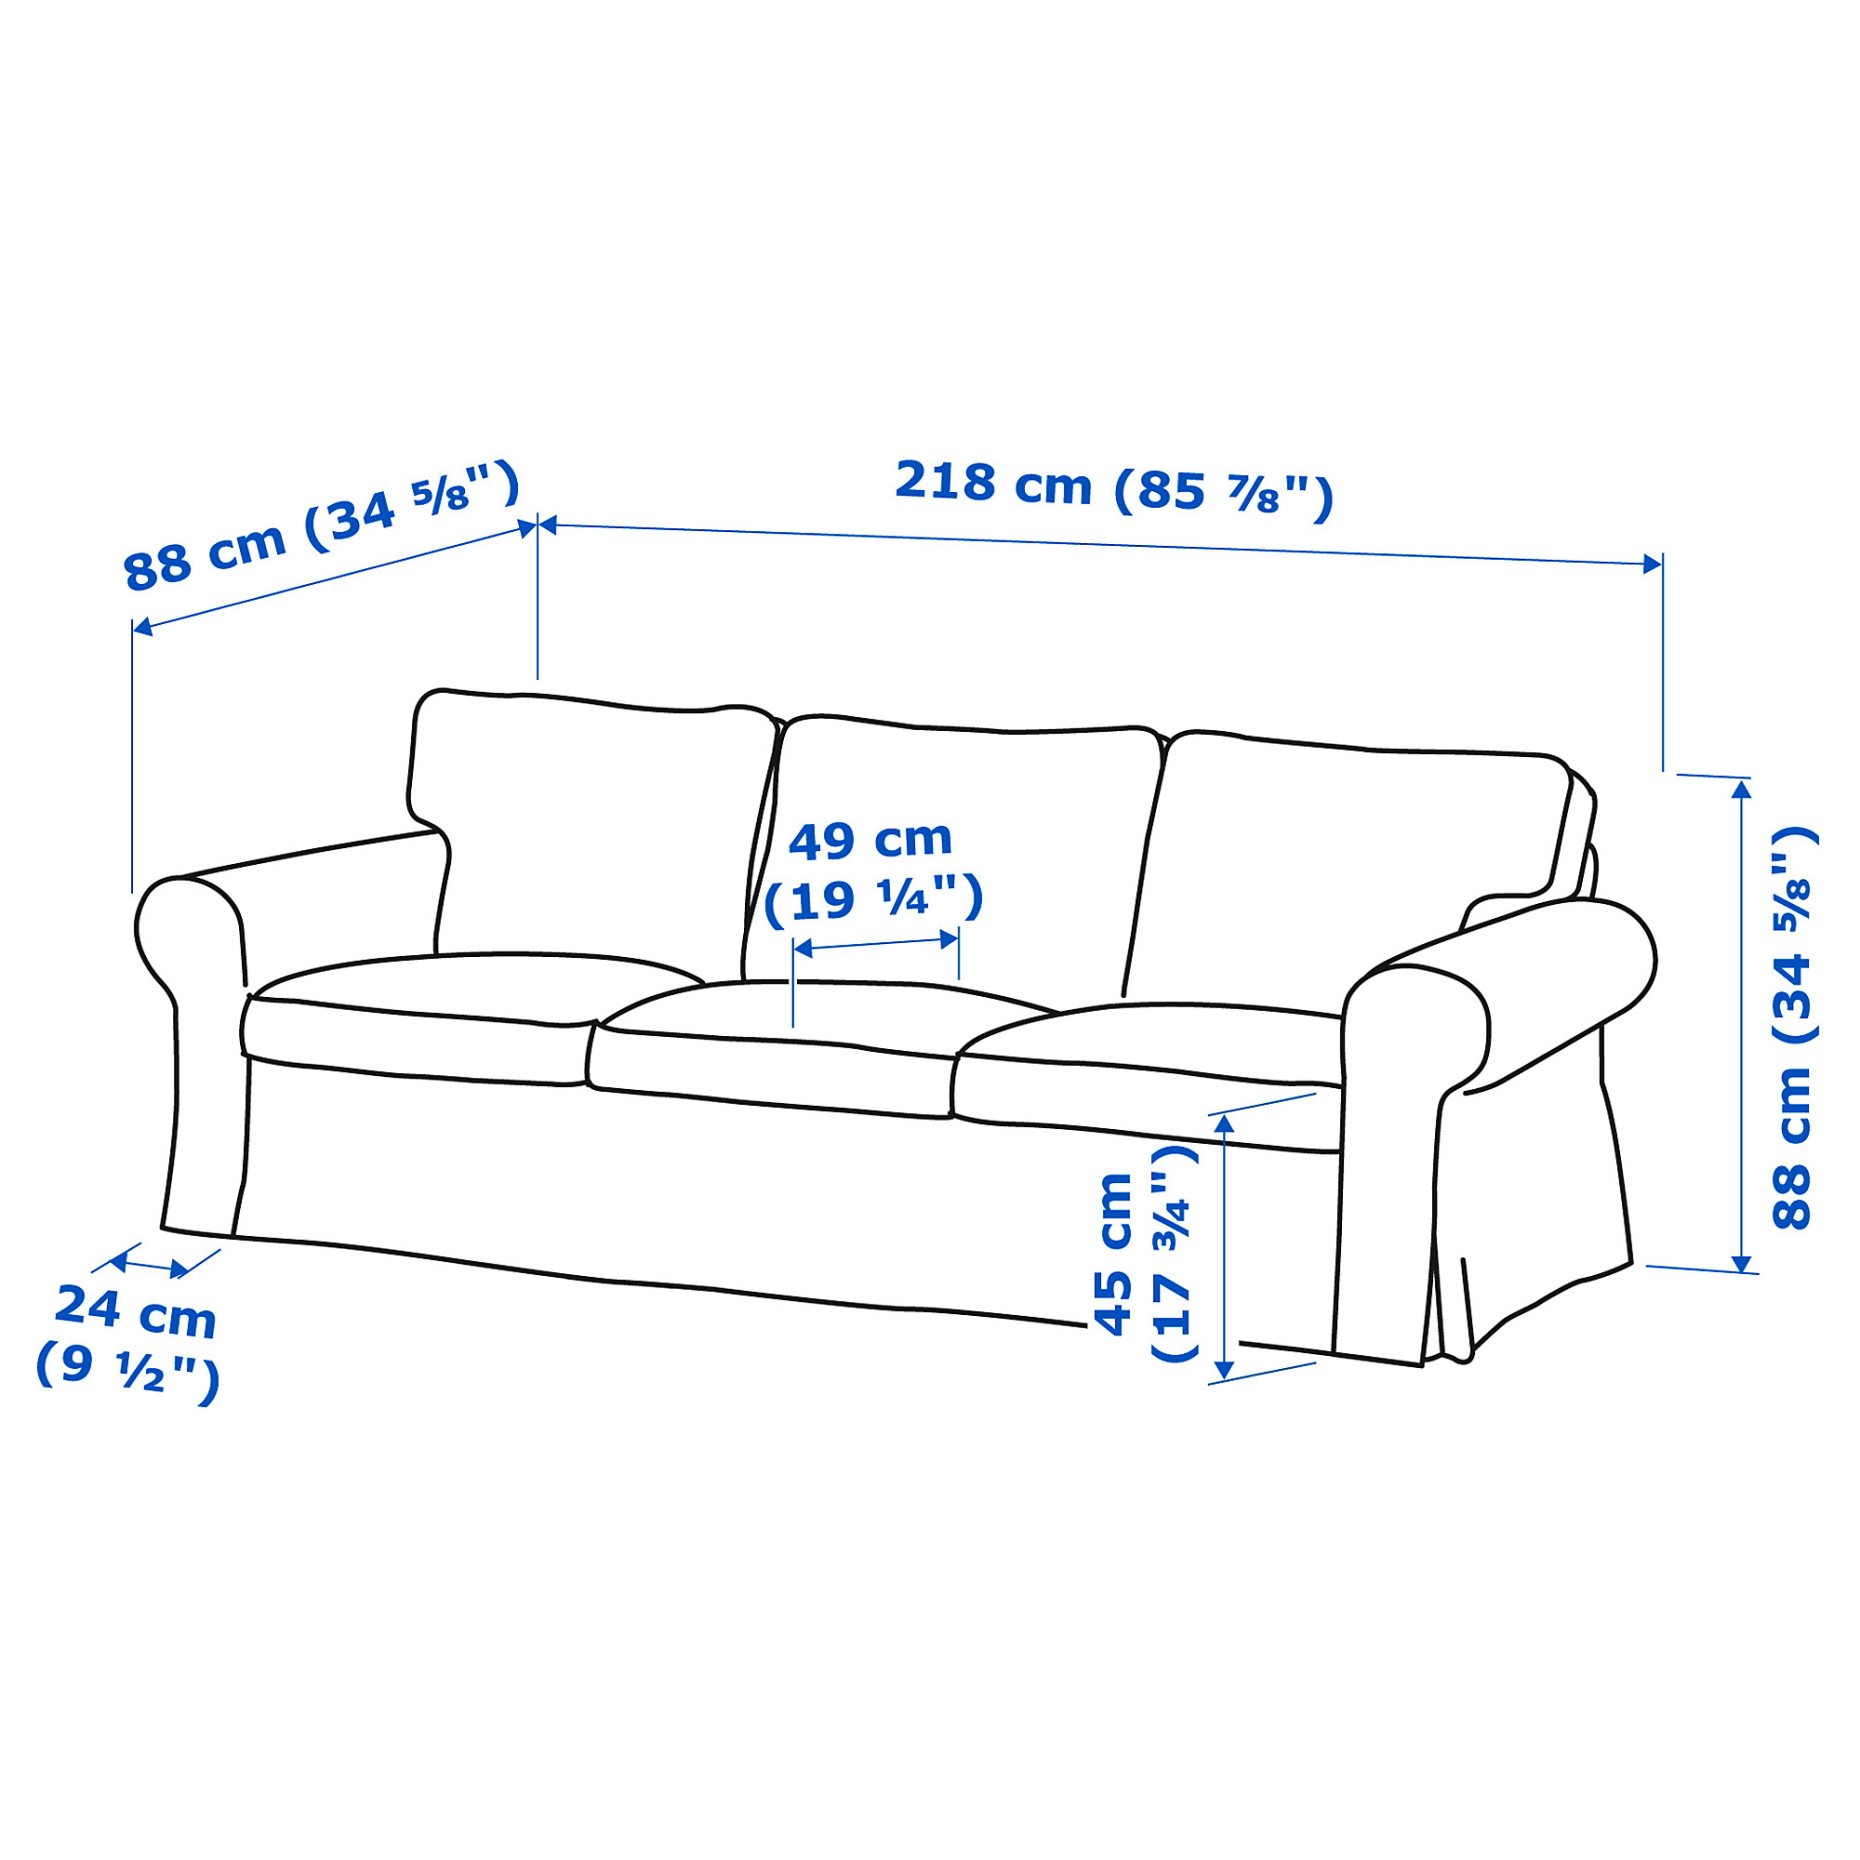 EKTORP, 3-seat sofa, 393.200.48